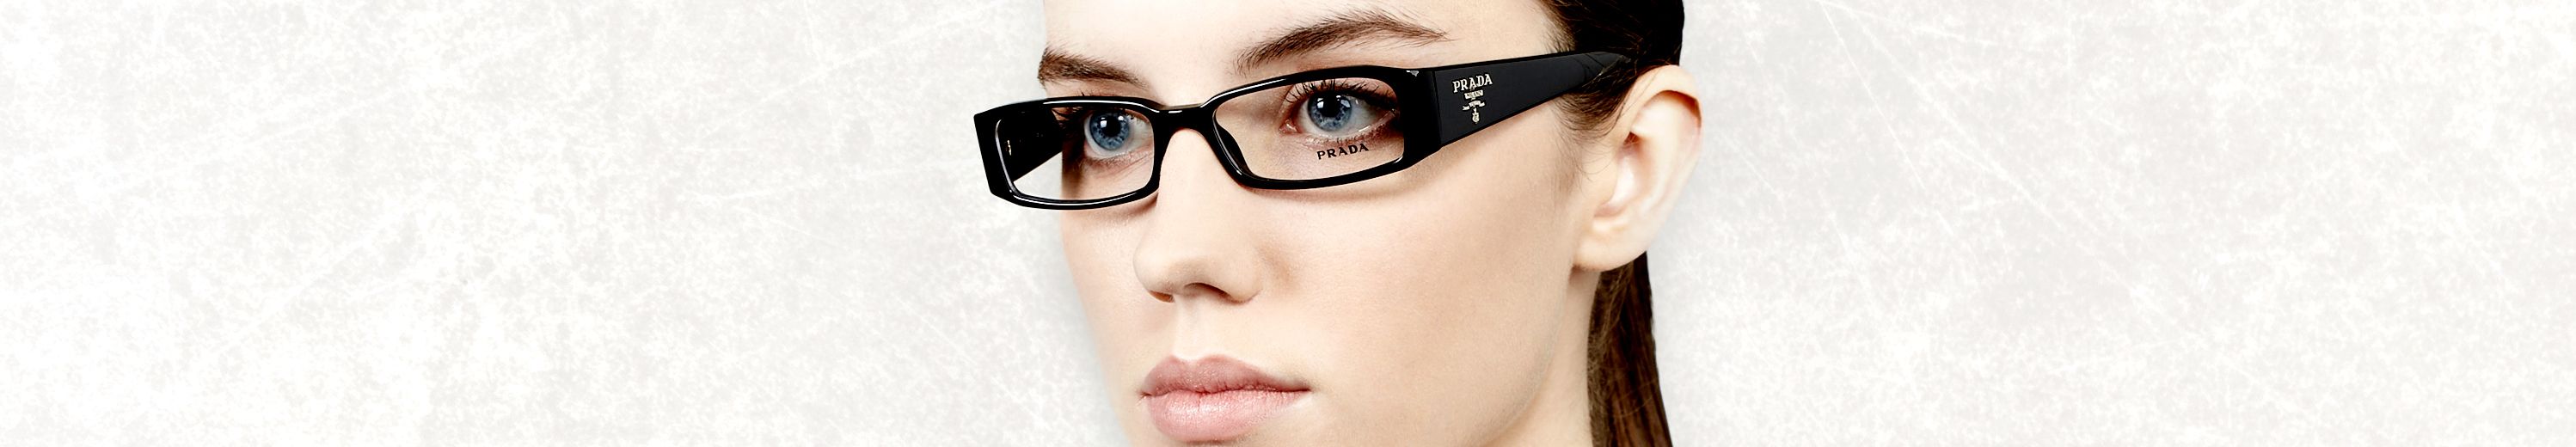 Narrow Eyeglasses for Men & Women